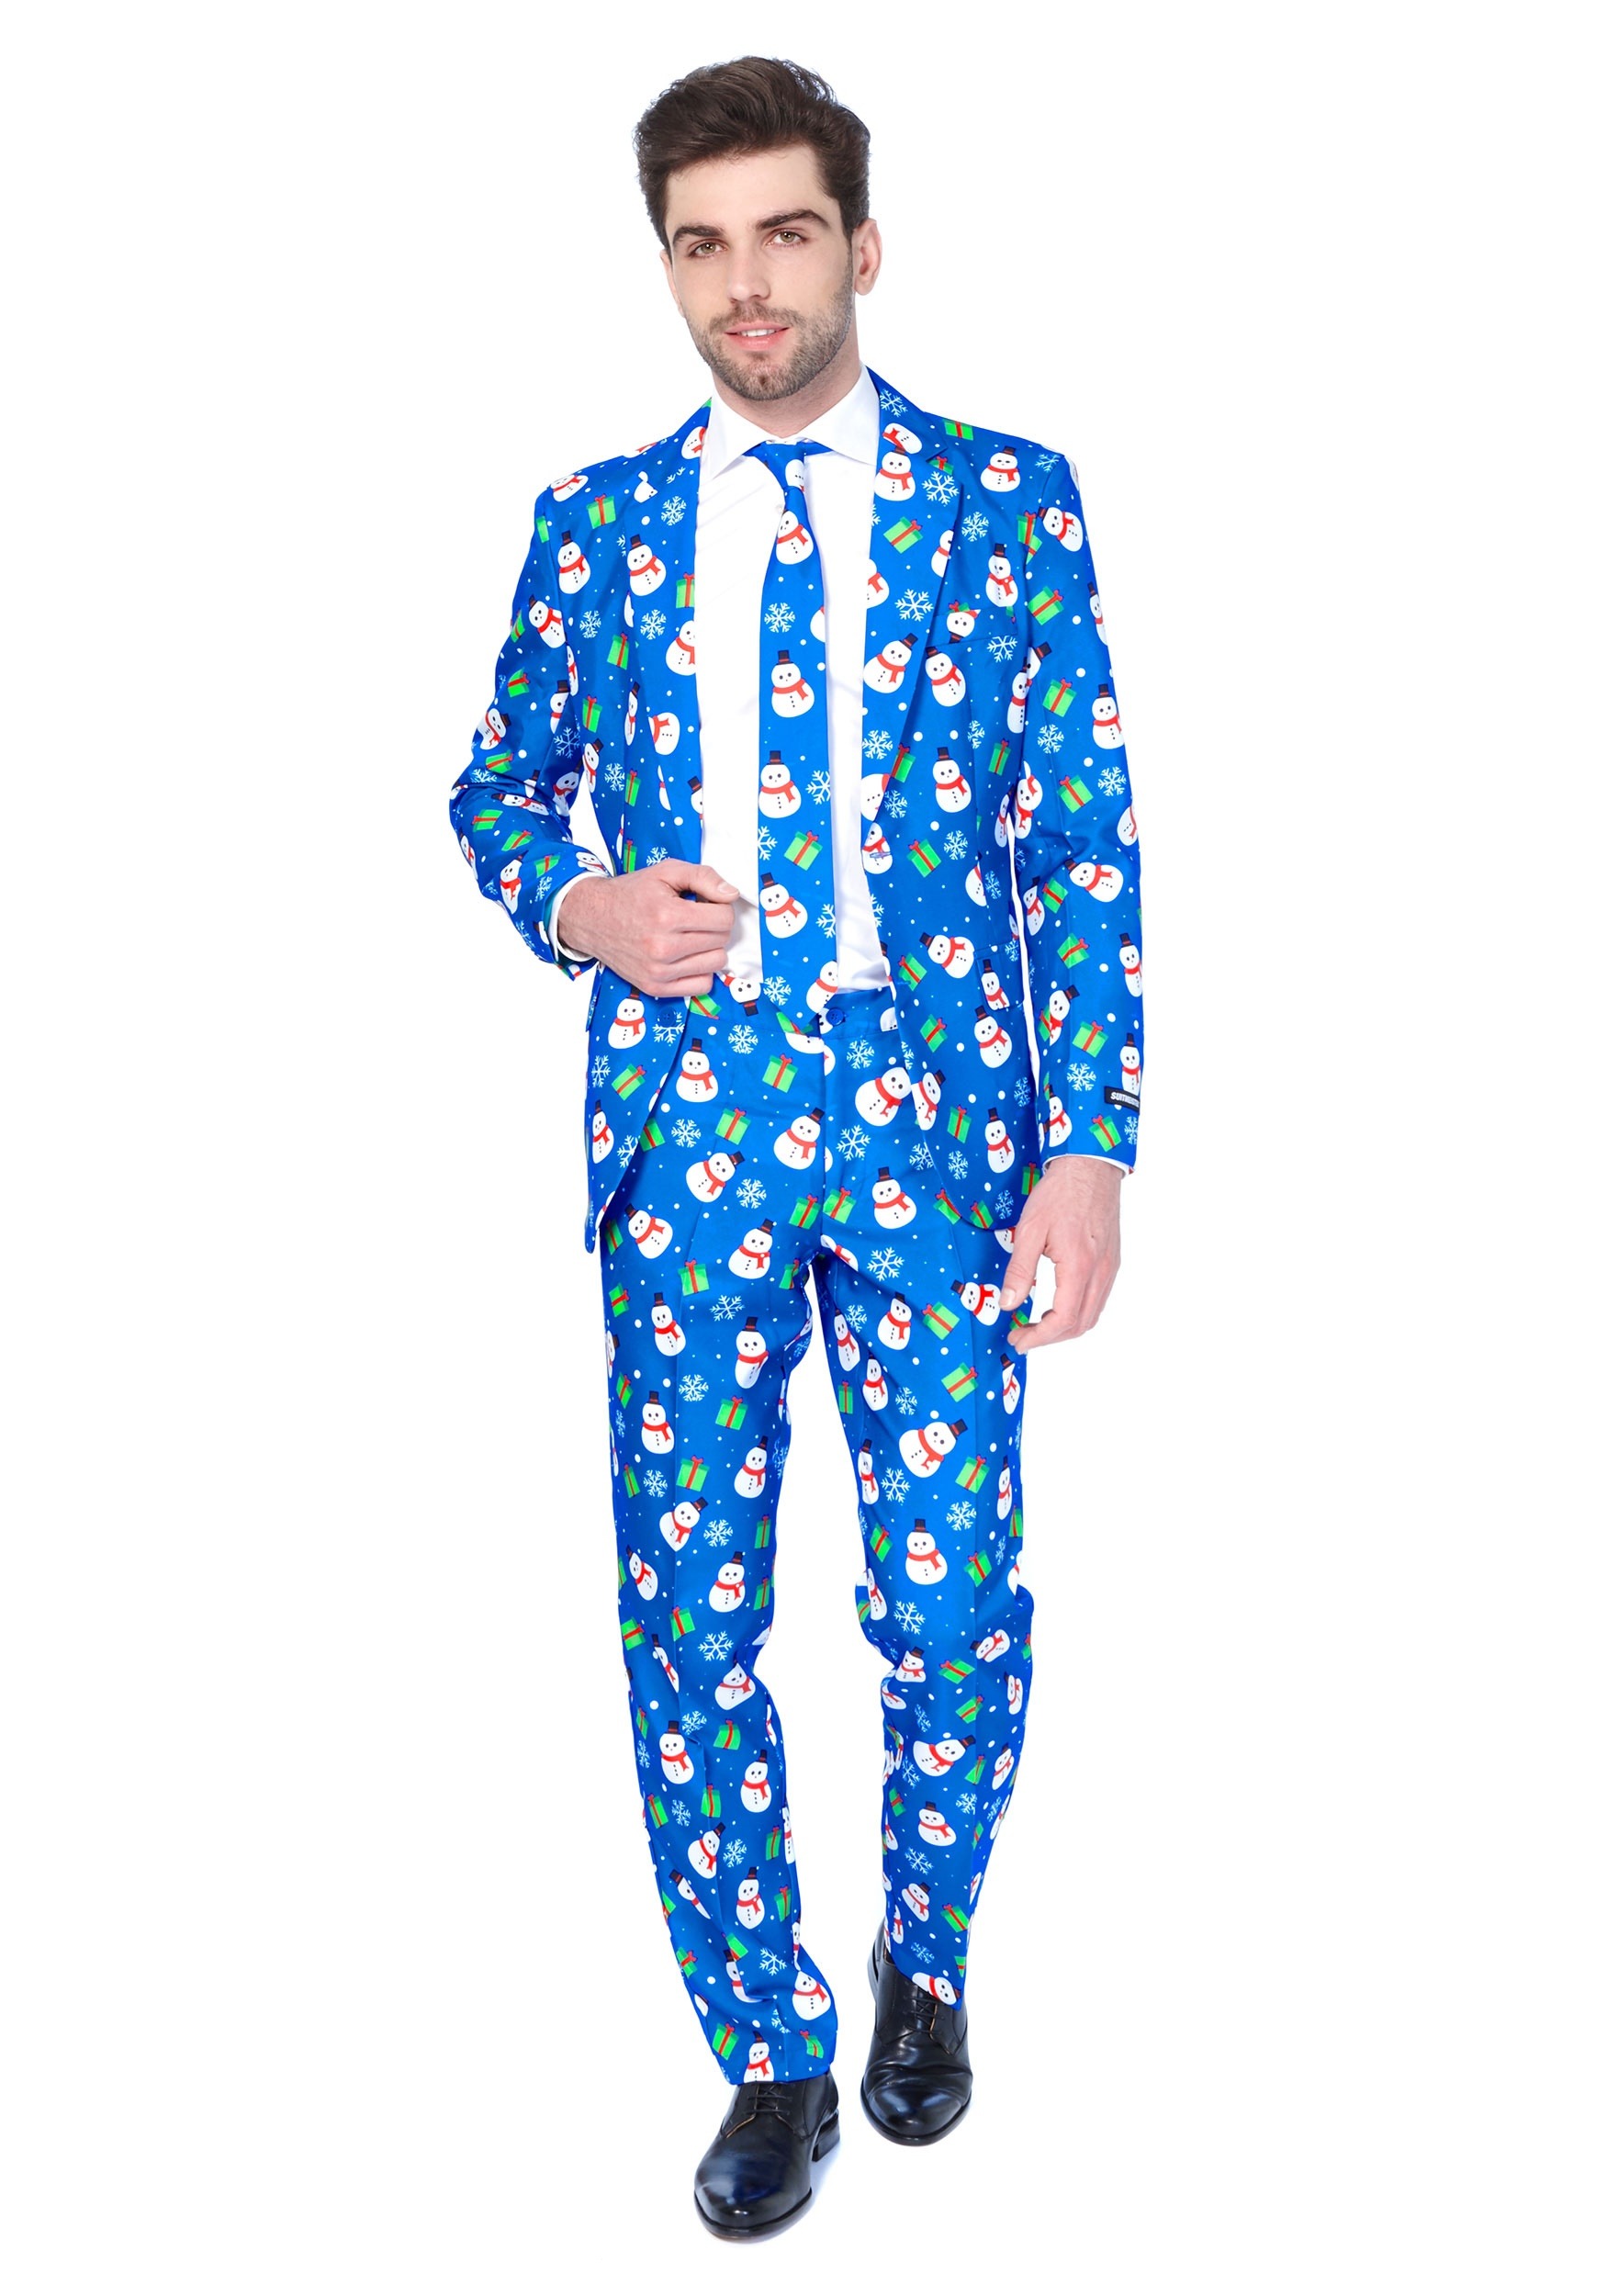 Men's Blue Snowman Suitmeister